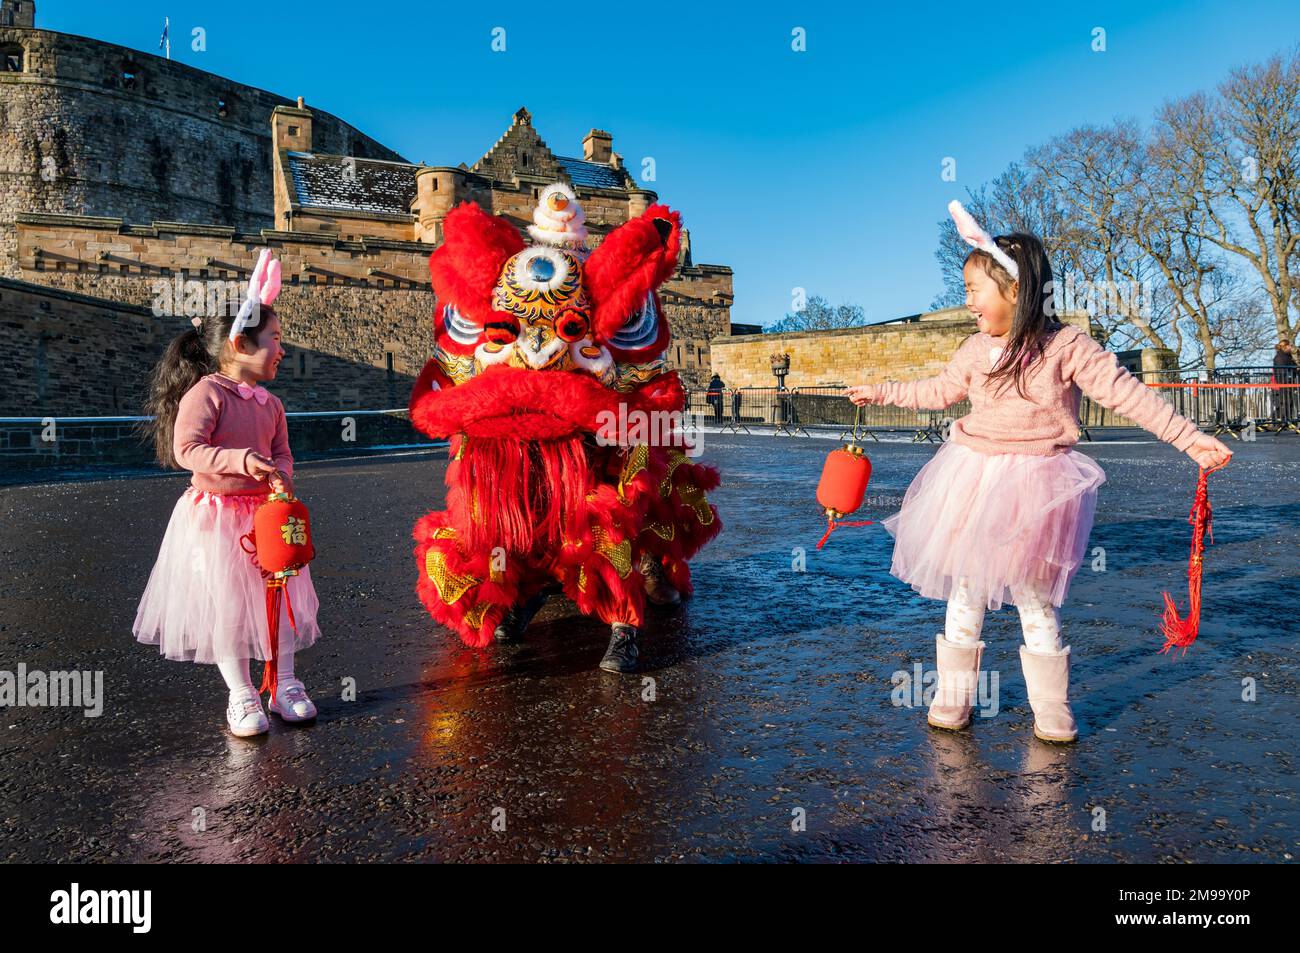 Jeunes filles chinoises portant des oreilles de lapin diverties par des danseurs de dragon pour célébrer le nouvel an chinois, (année du lapin), Château d'Édimbourg, Écosse, Royaume-Uni Banque D'Images